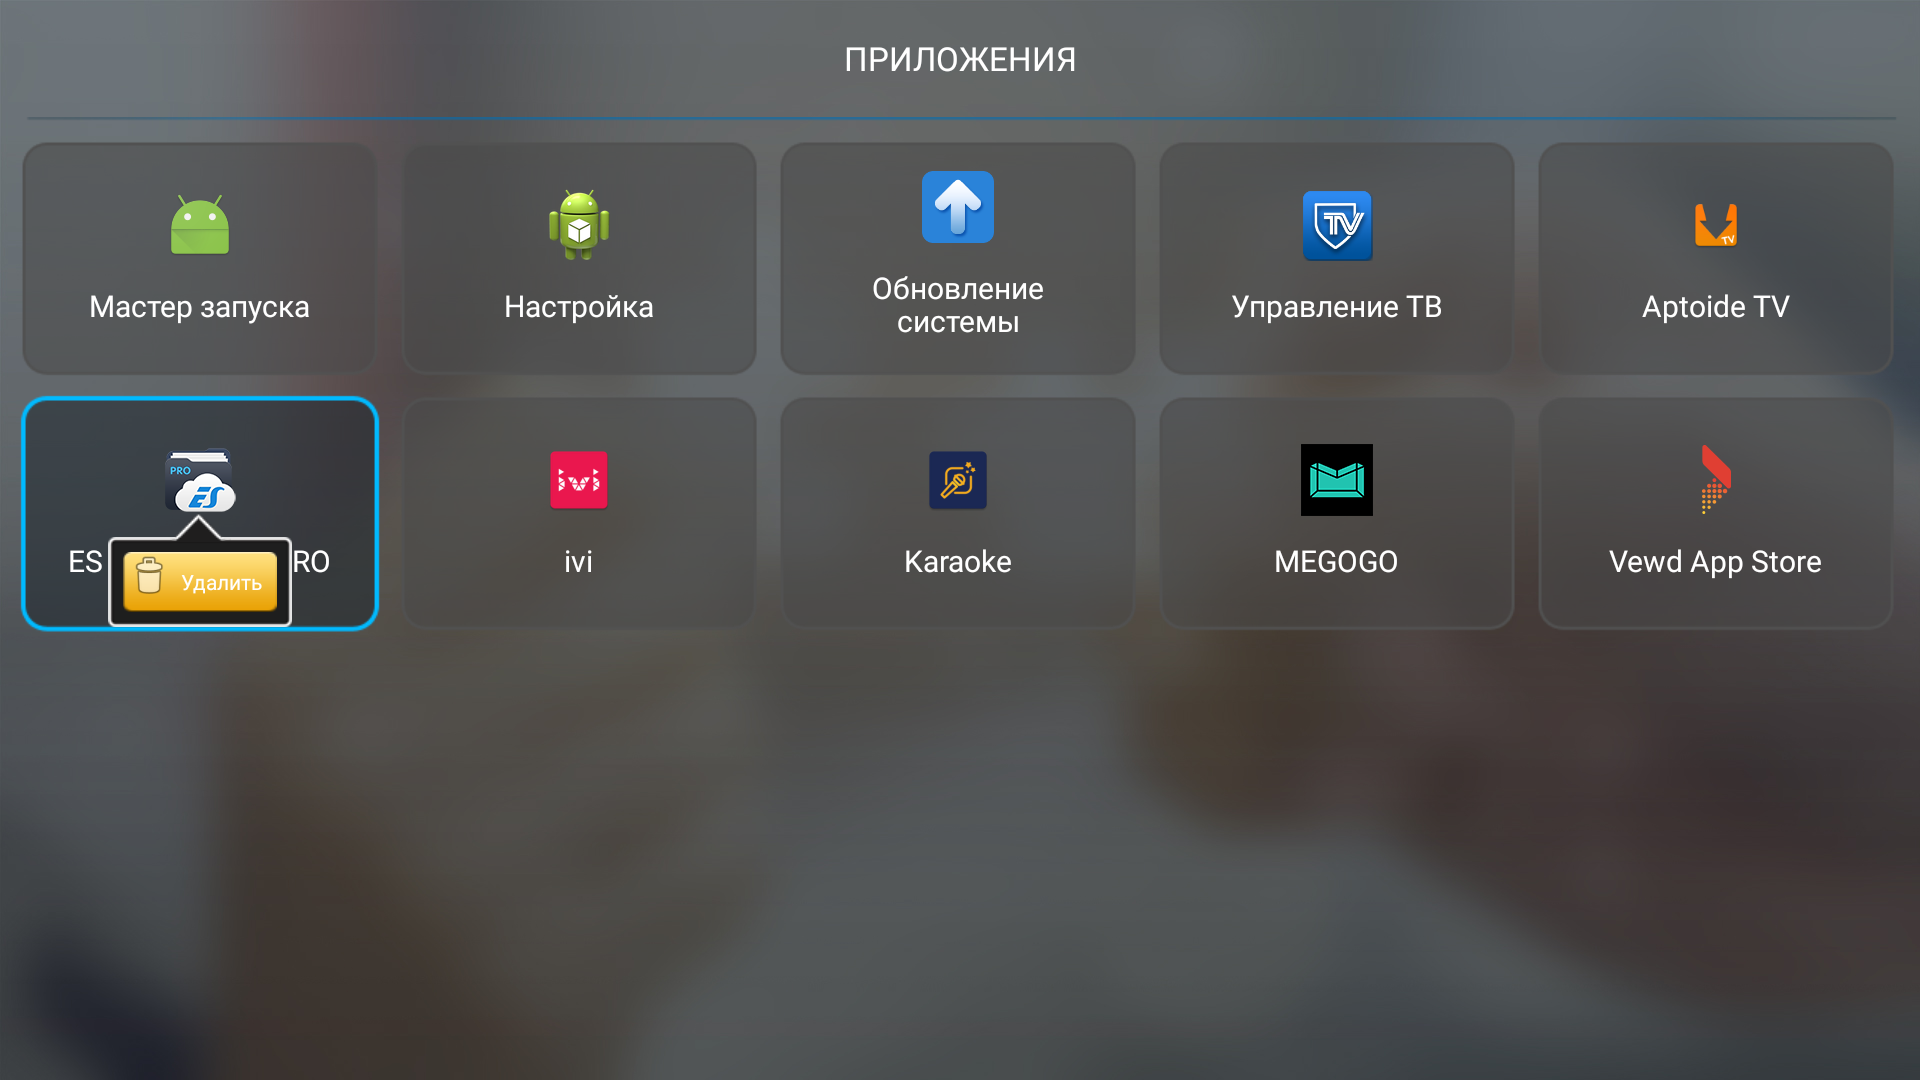 Приложение для телевизора дублирование. Телевизор DEXP Smart TV приложение смарт. Samsung Smart TV 32 menu Android. Телевизор с беспроводным интерфейсом. Приложение установленные на смарт ТВ Haier.